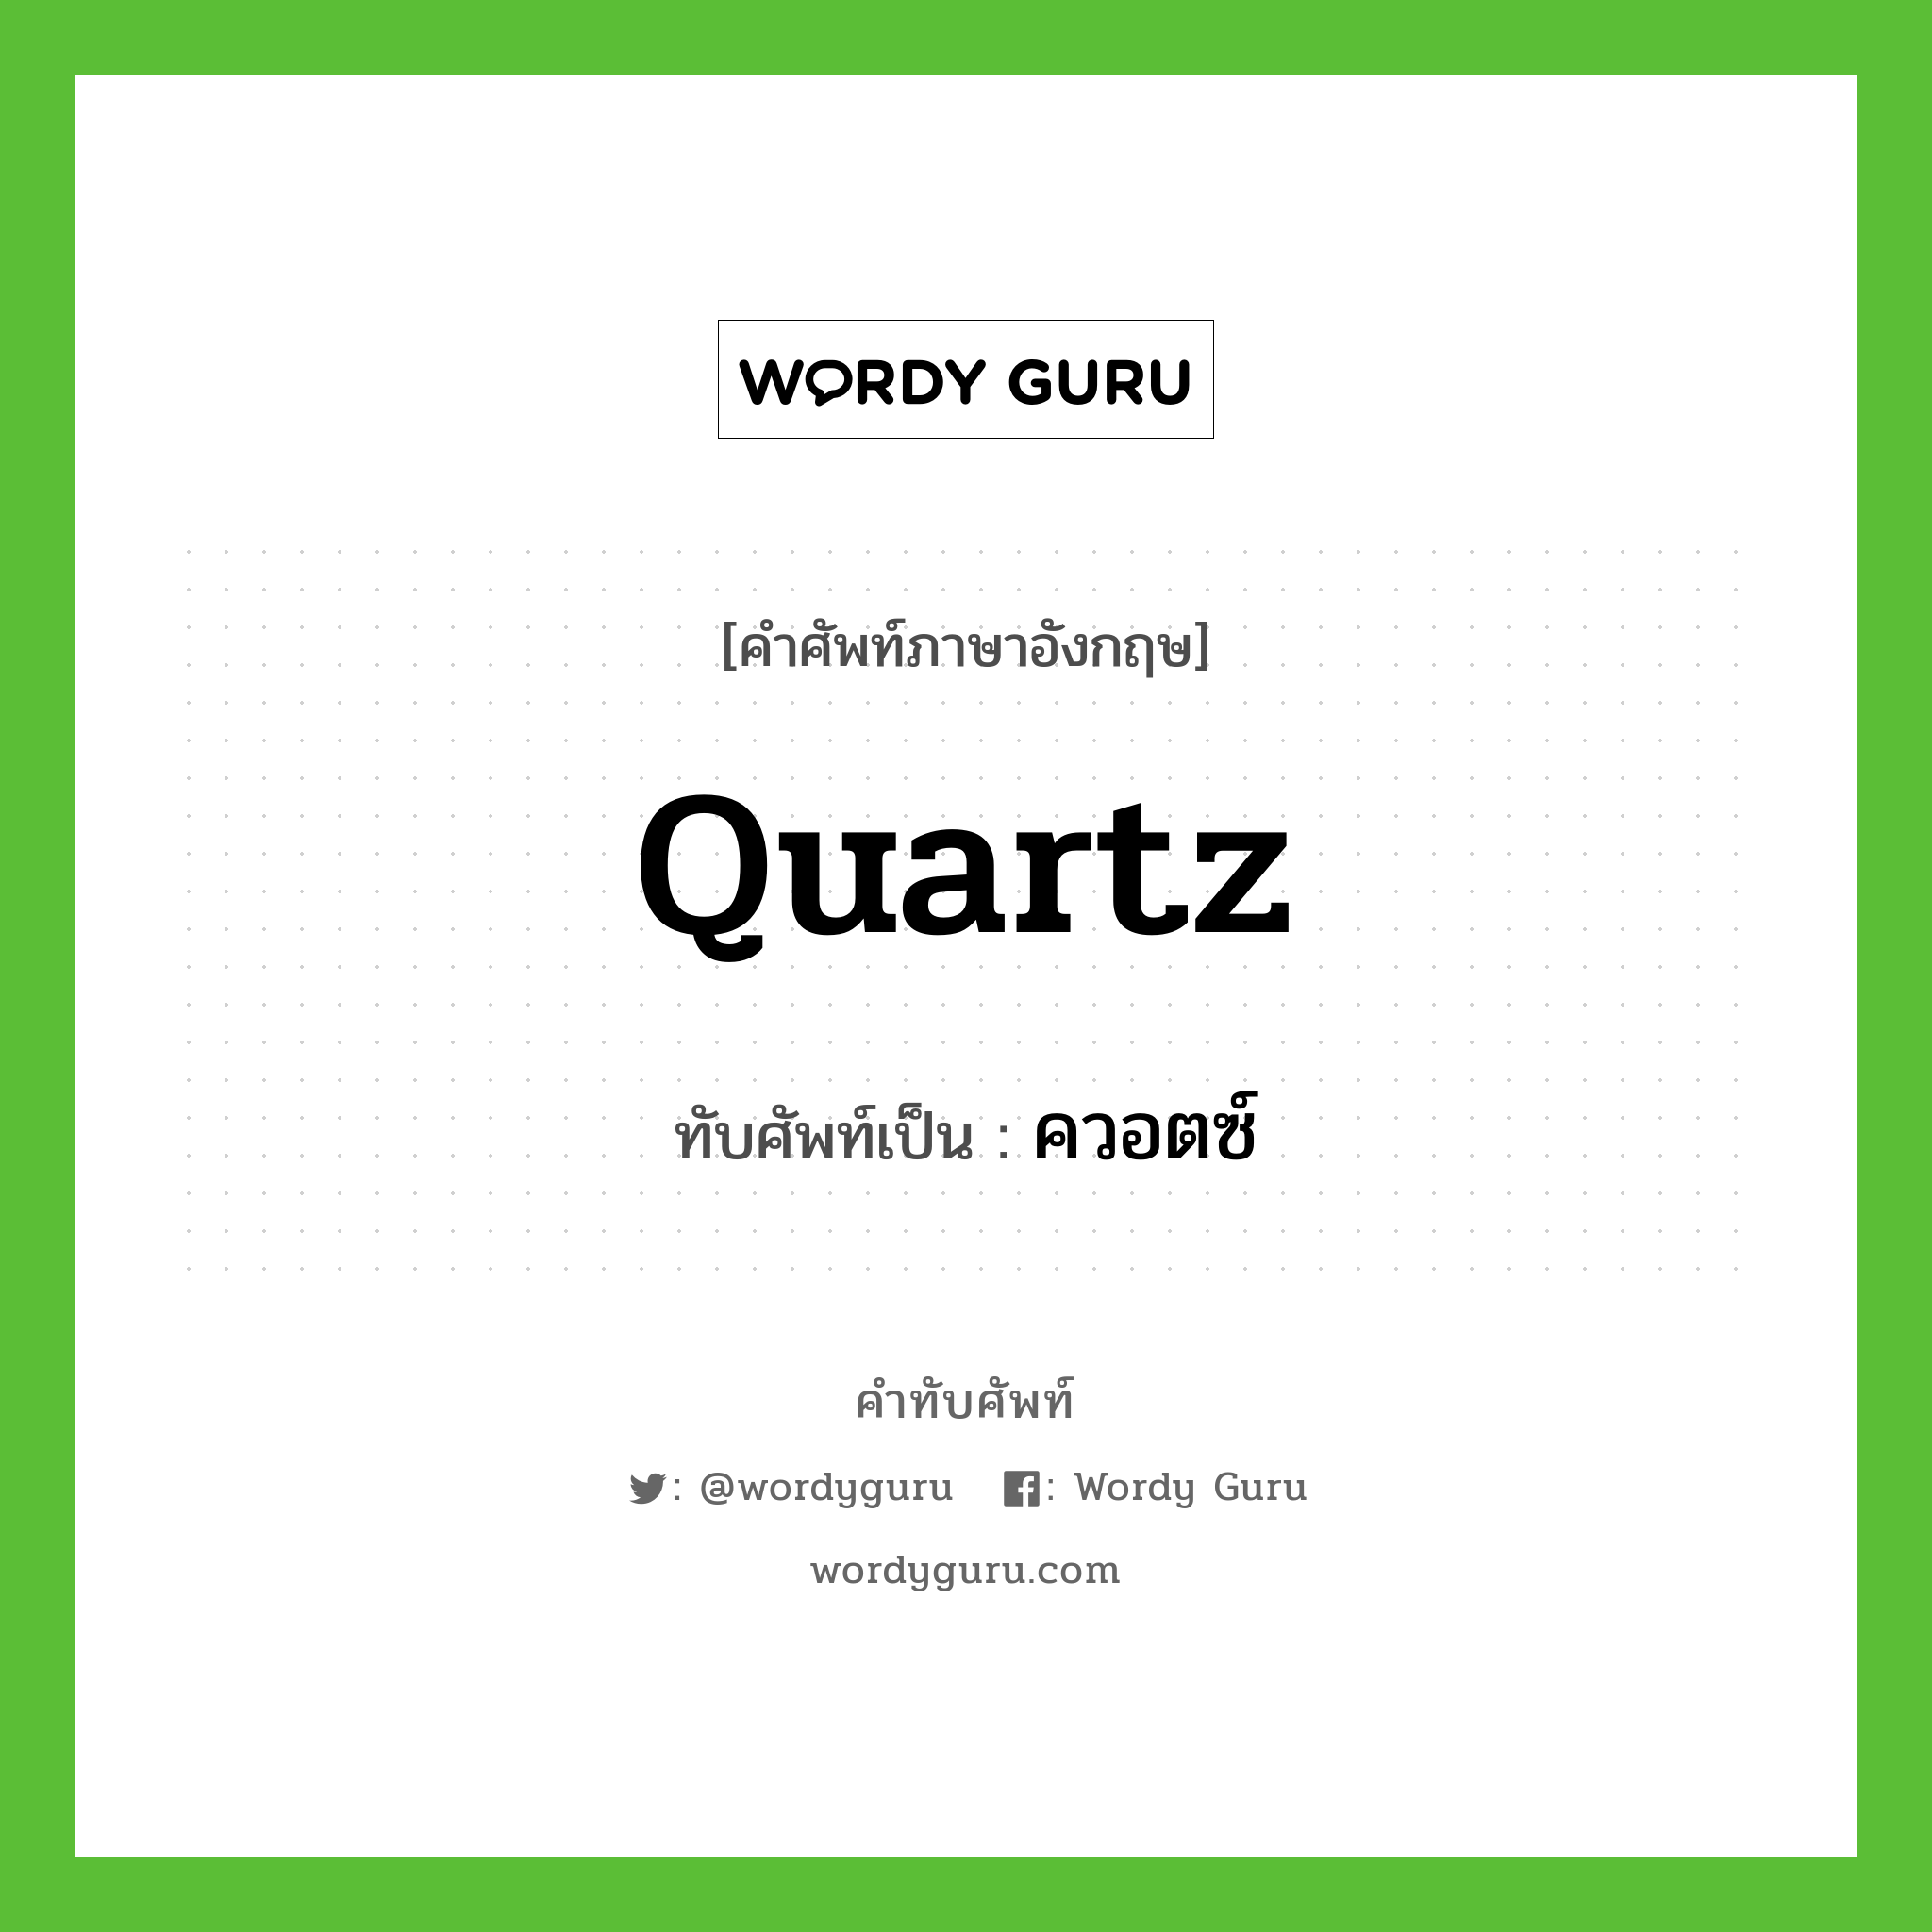 quartz เขียนเป็นคำไทยว่าอะไร?, คำศัพท์ภาษาอังกฤษ quartz ทับศัพท์เป็น ควอตซ์